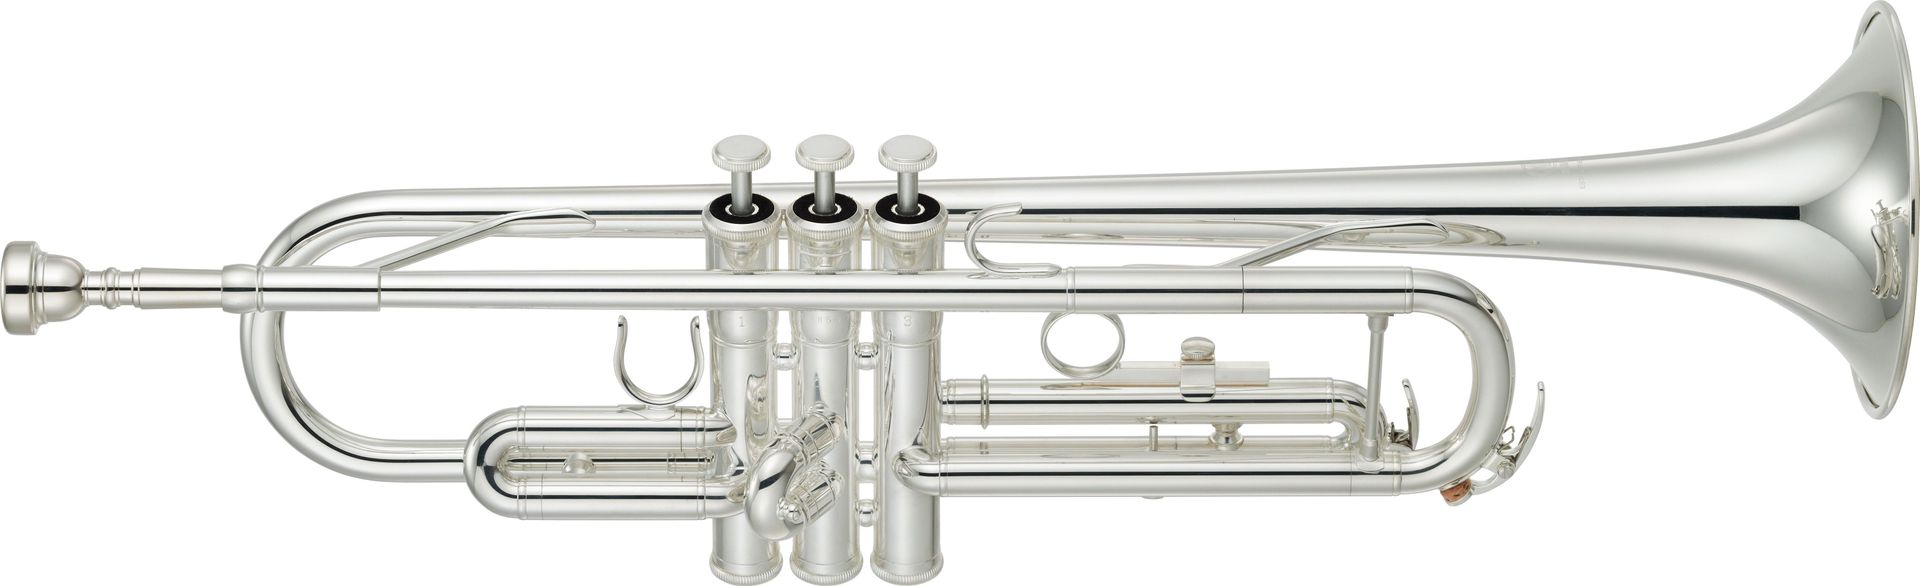 Yamaha YTR 3335s B Trompete, Bohrung 11,65mm, incl.Etui u. Zubehör  - Onlineshop Musikhaus Markstein